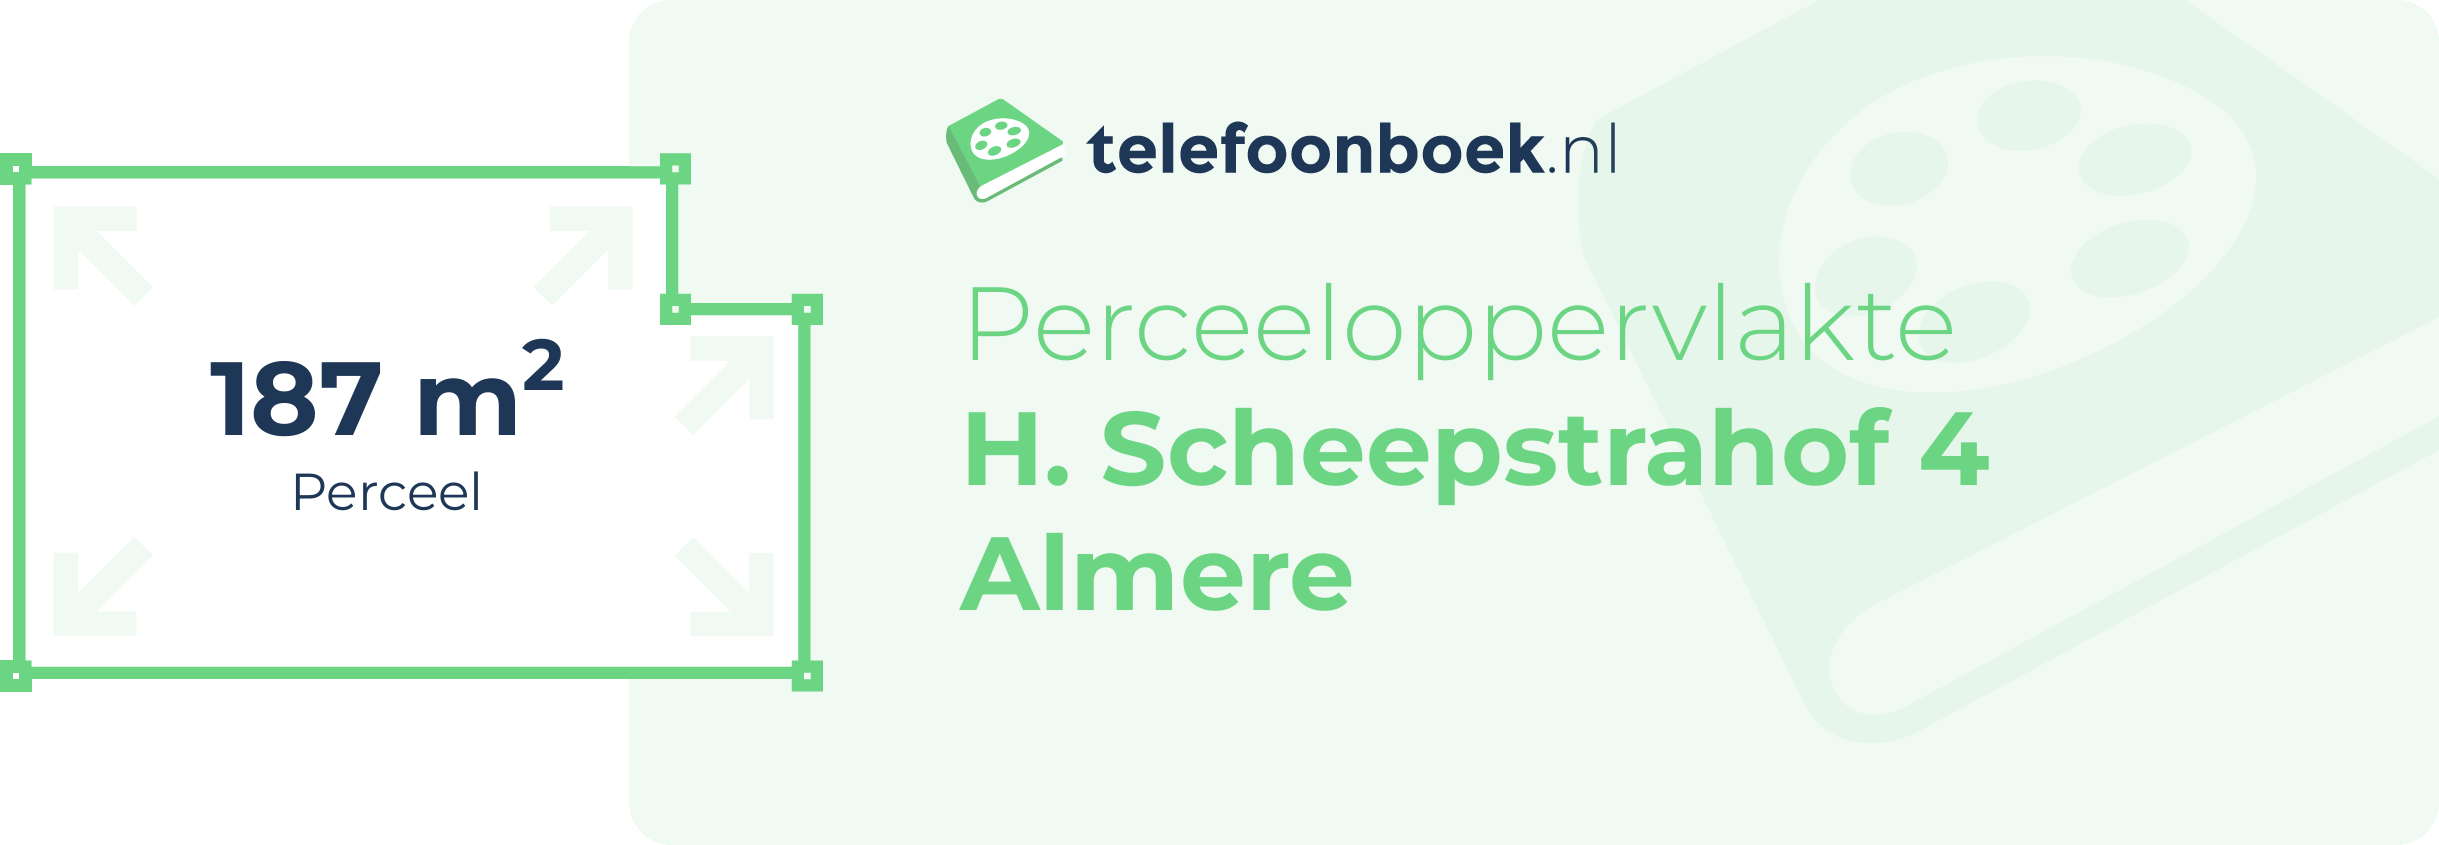 Perceeloppervlakte H. Scheepstrahof 4 Almere